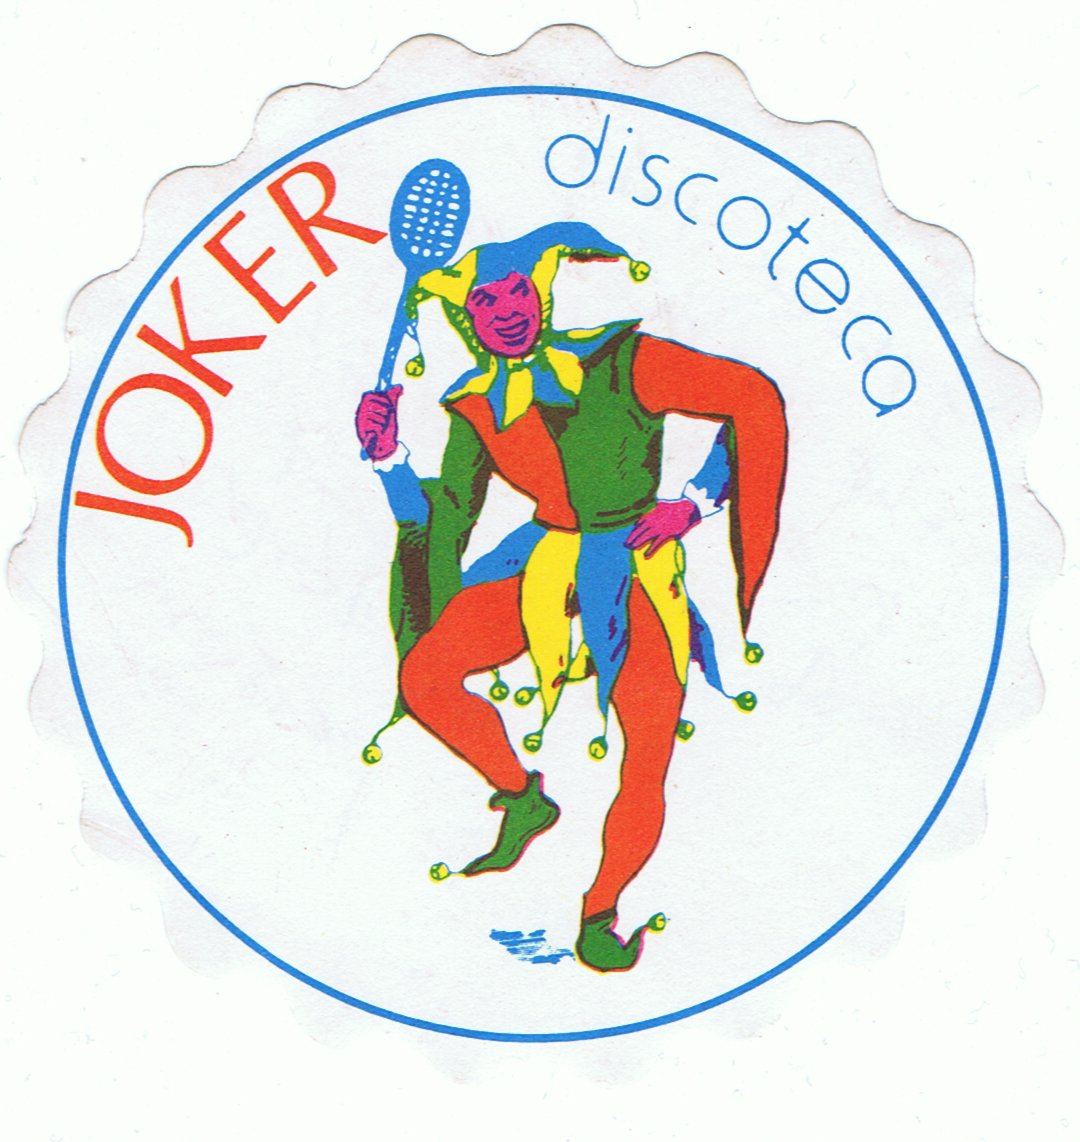 Joker disco Puerto del Carmen Lanzarote.